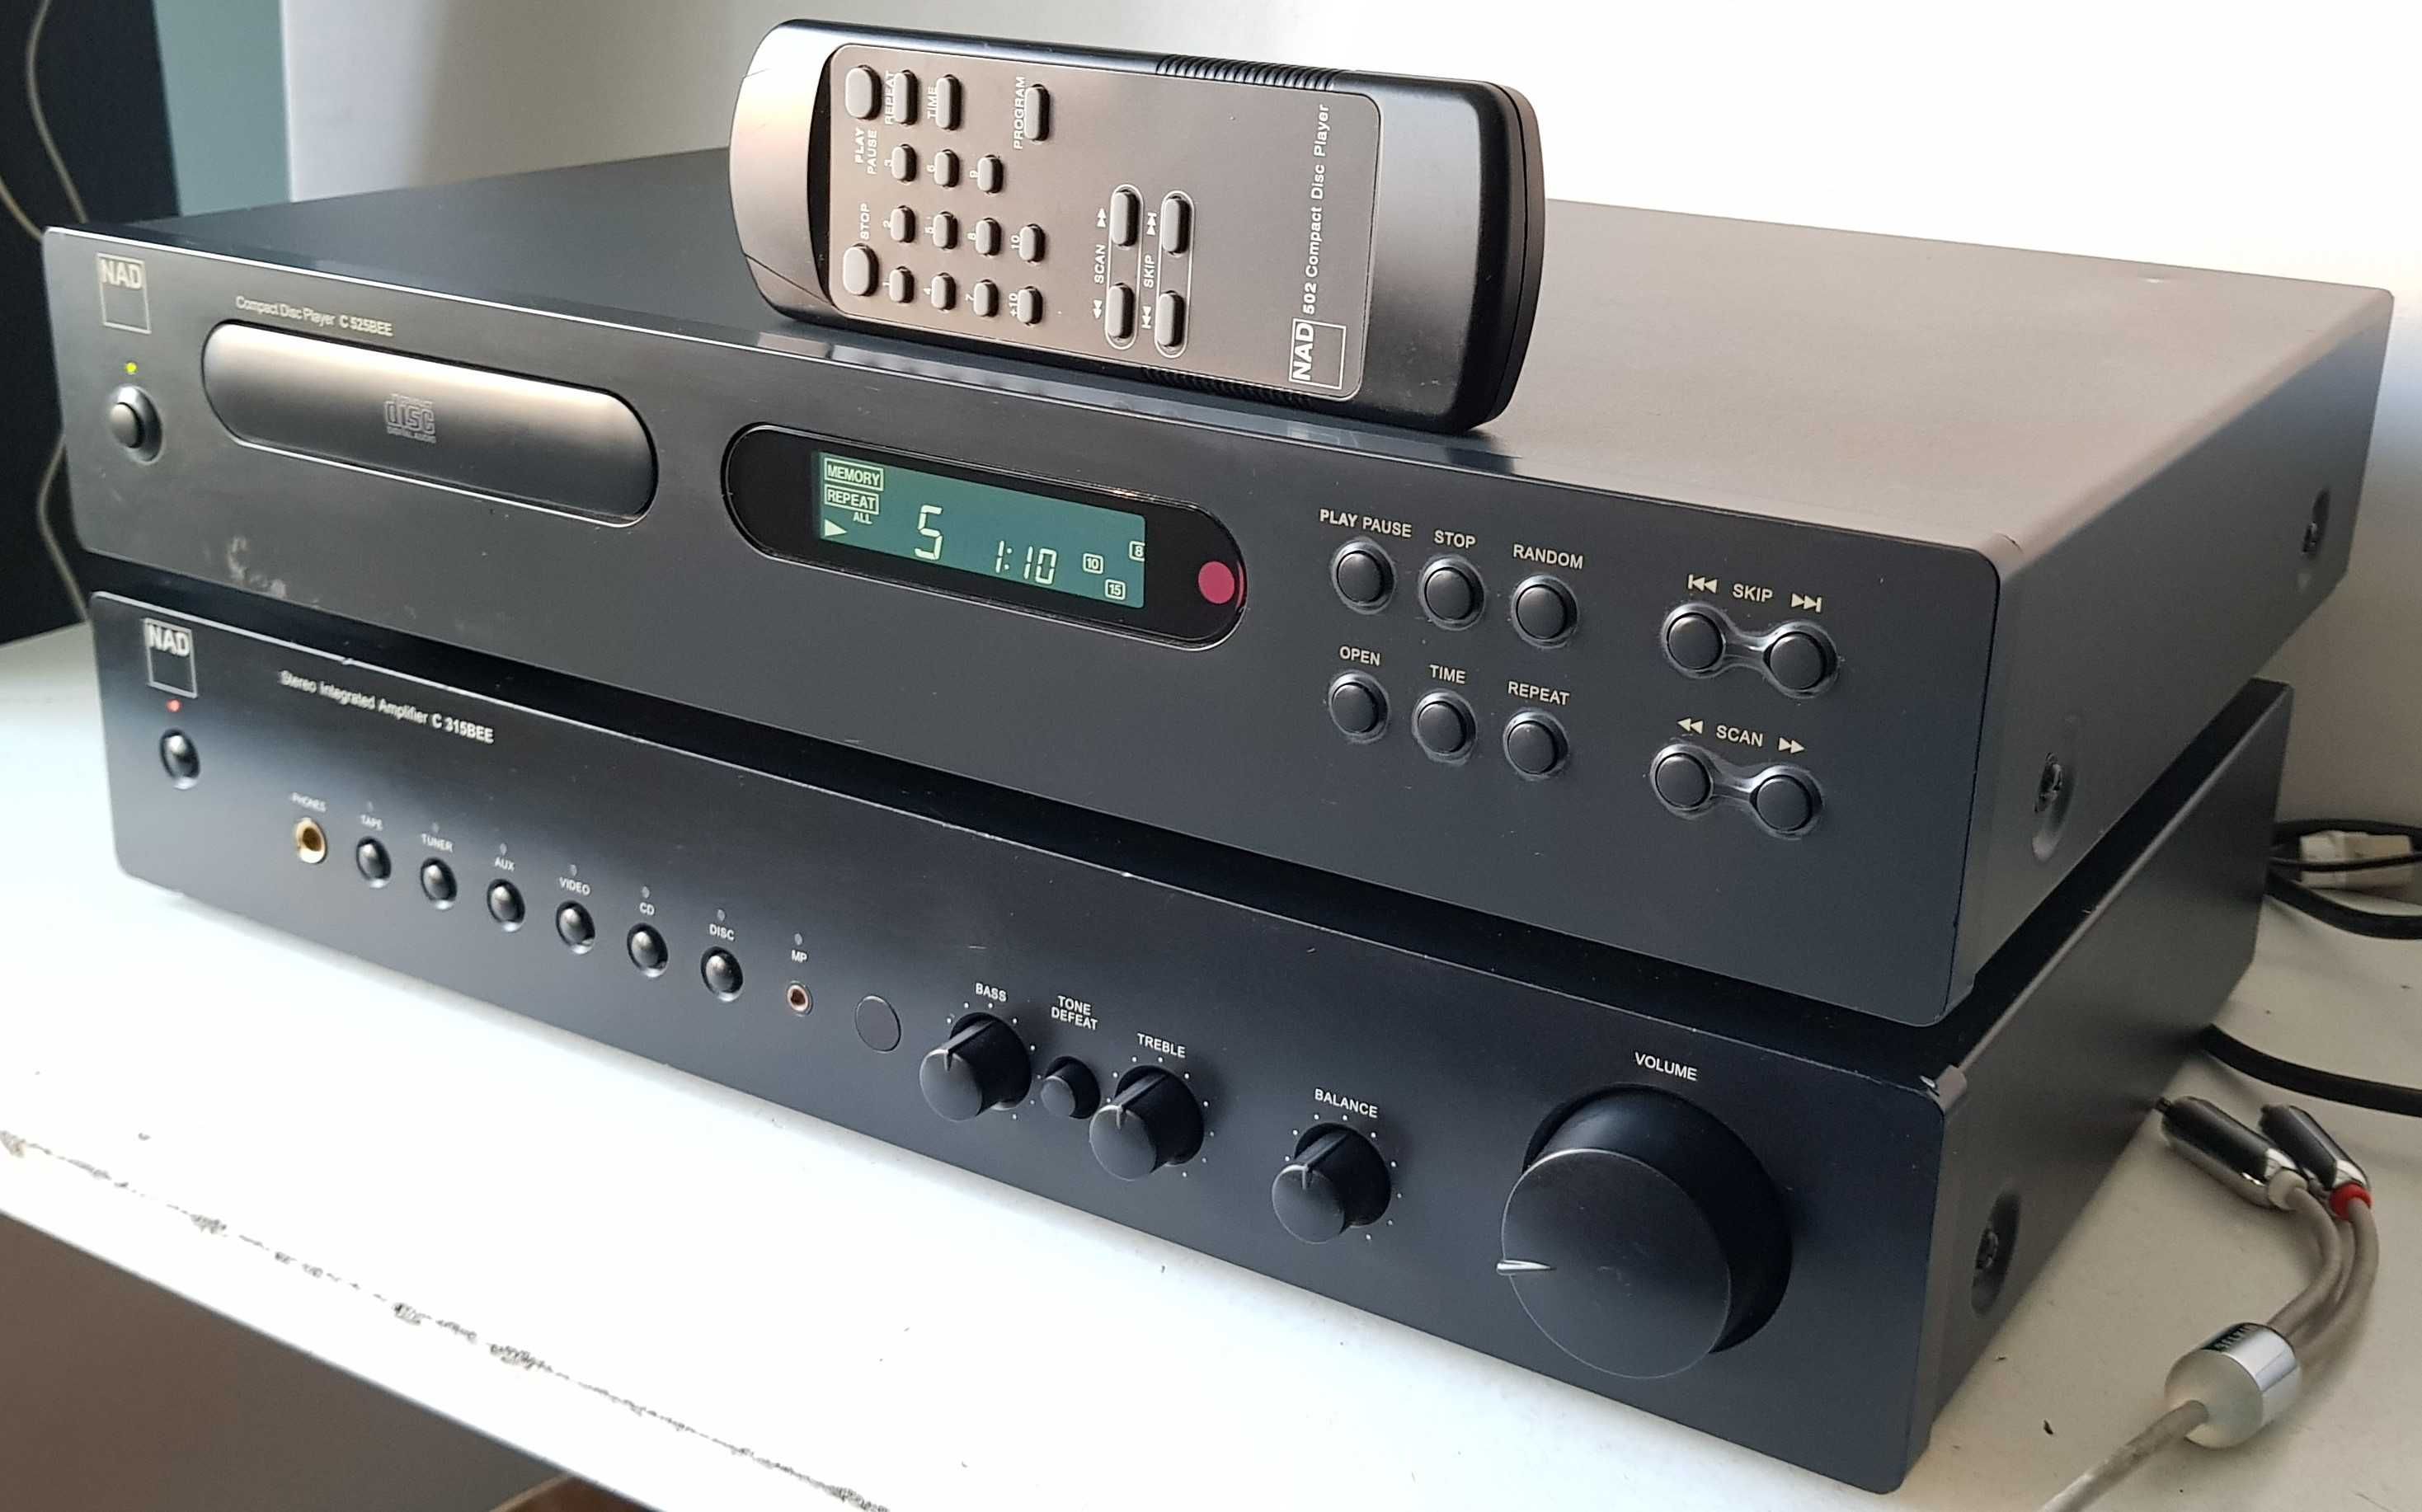 NAD C 525 BEE CD player muzica Audiophile cu telecomanda arta colectie